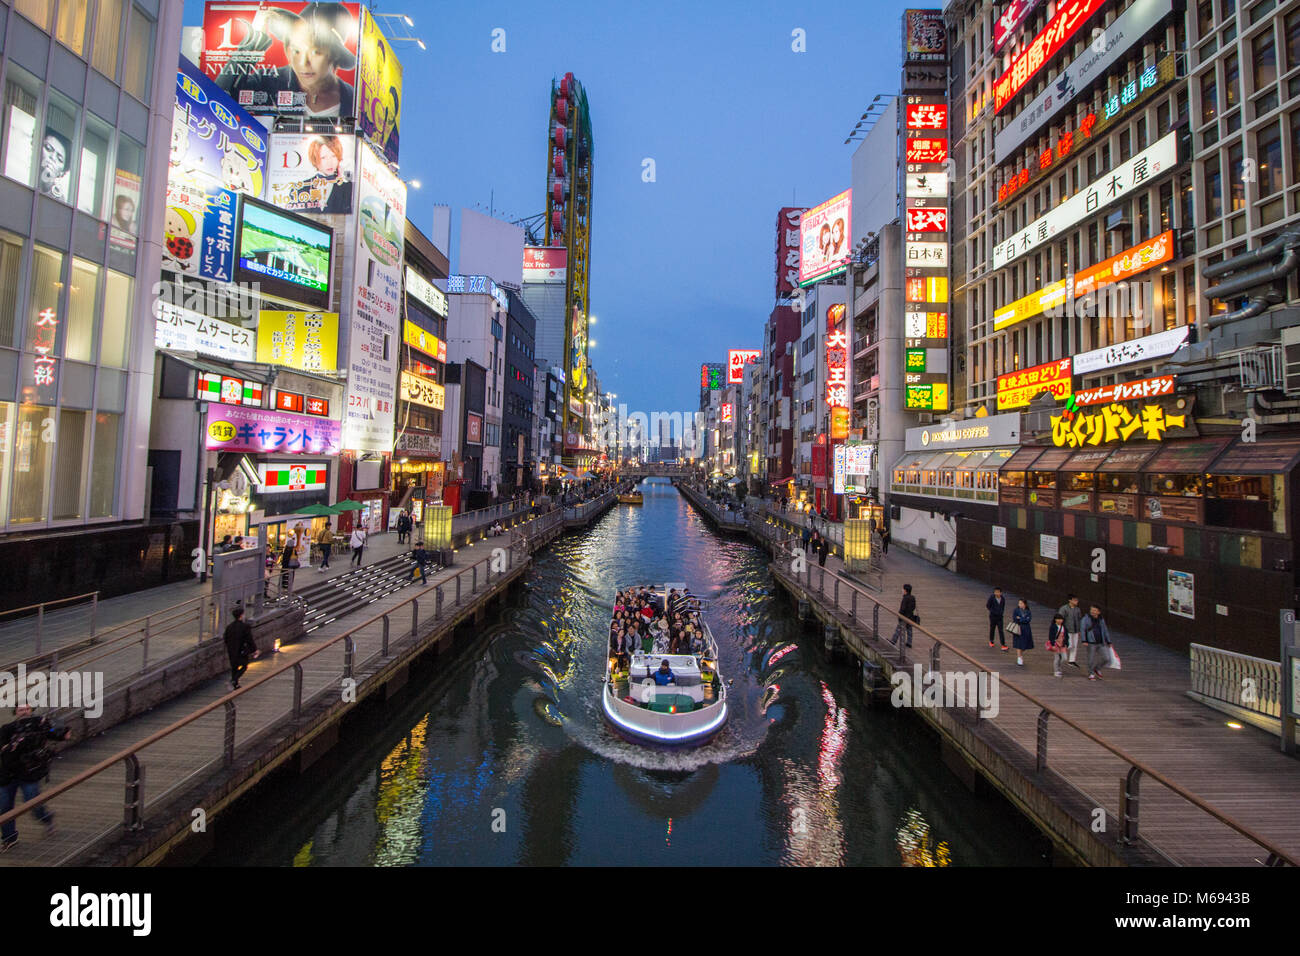 Presto la sera la vita notturna nella trafficata area intorno Dotonbori, Osaka, Giappone Foto Stock